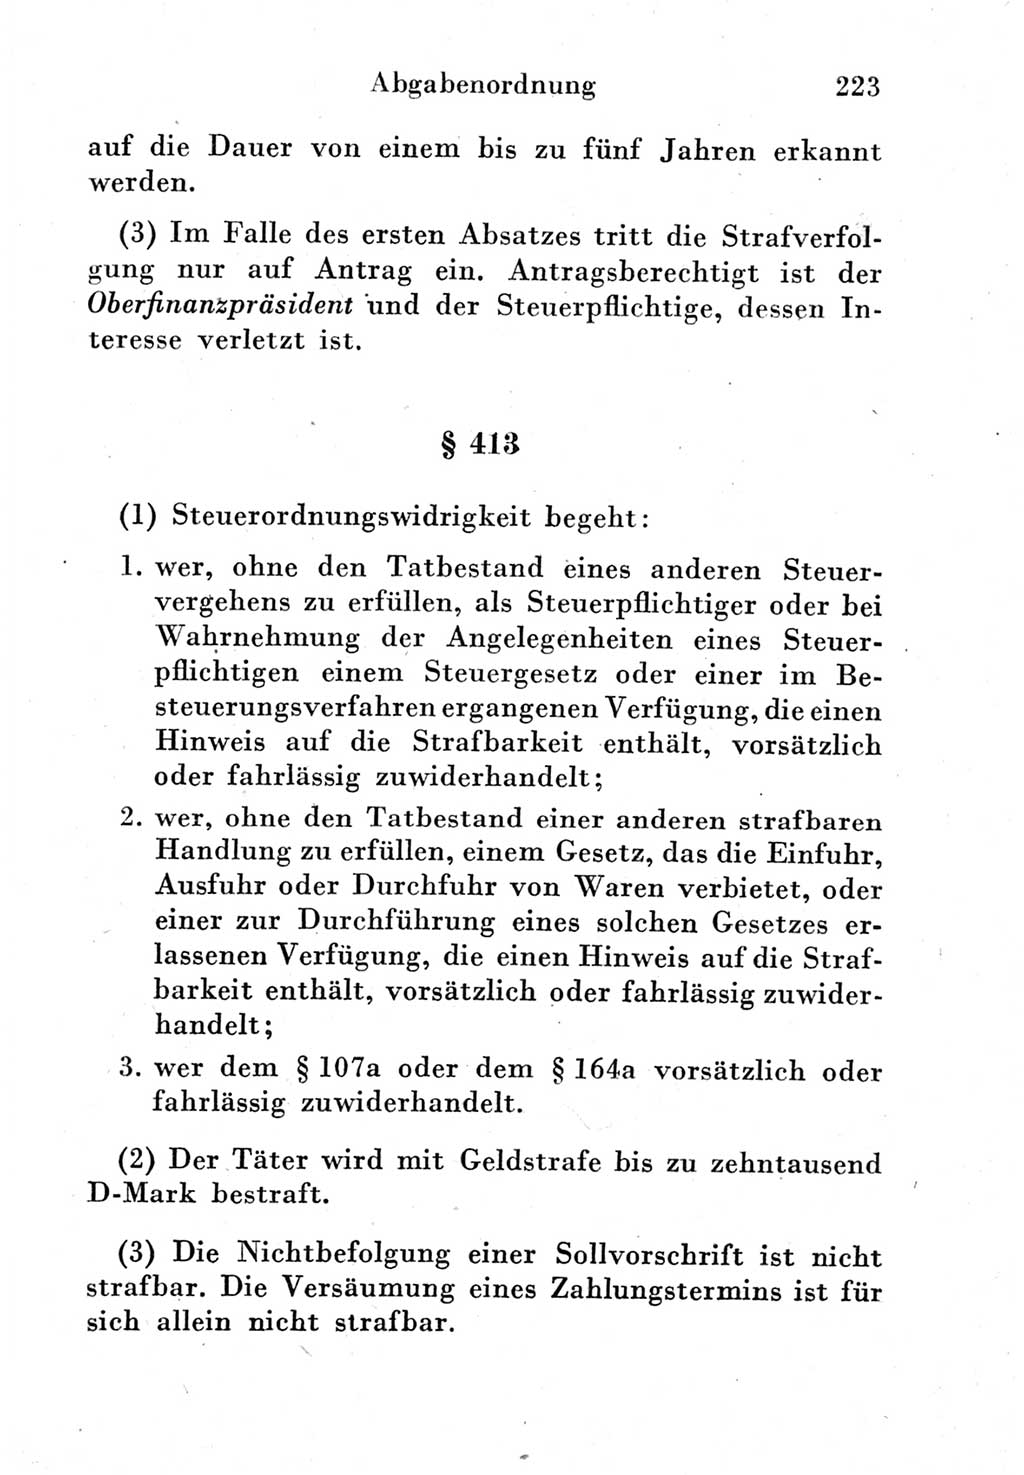 Strafgesetzbuch (StGB) und andere Strafgesetze [Deutsche Demokratische Republik (DDR)] 1951, Seite 223 (StGB Strafges. DDR 1951, S. 223)